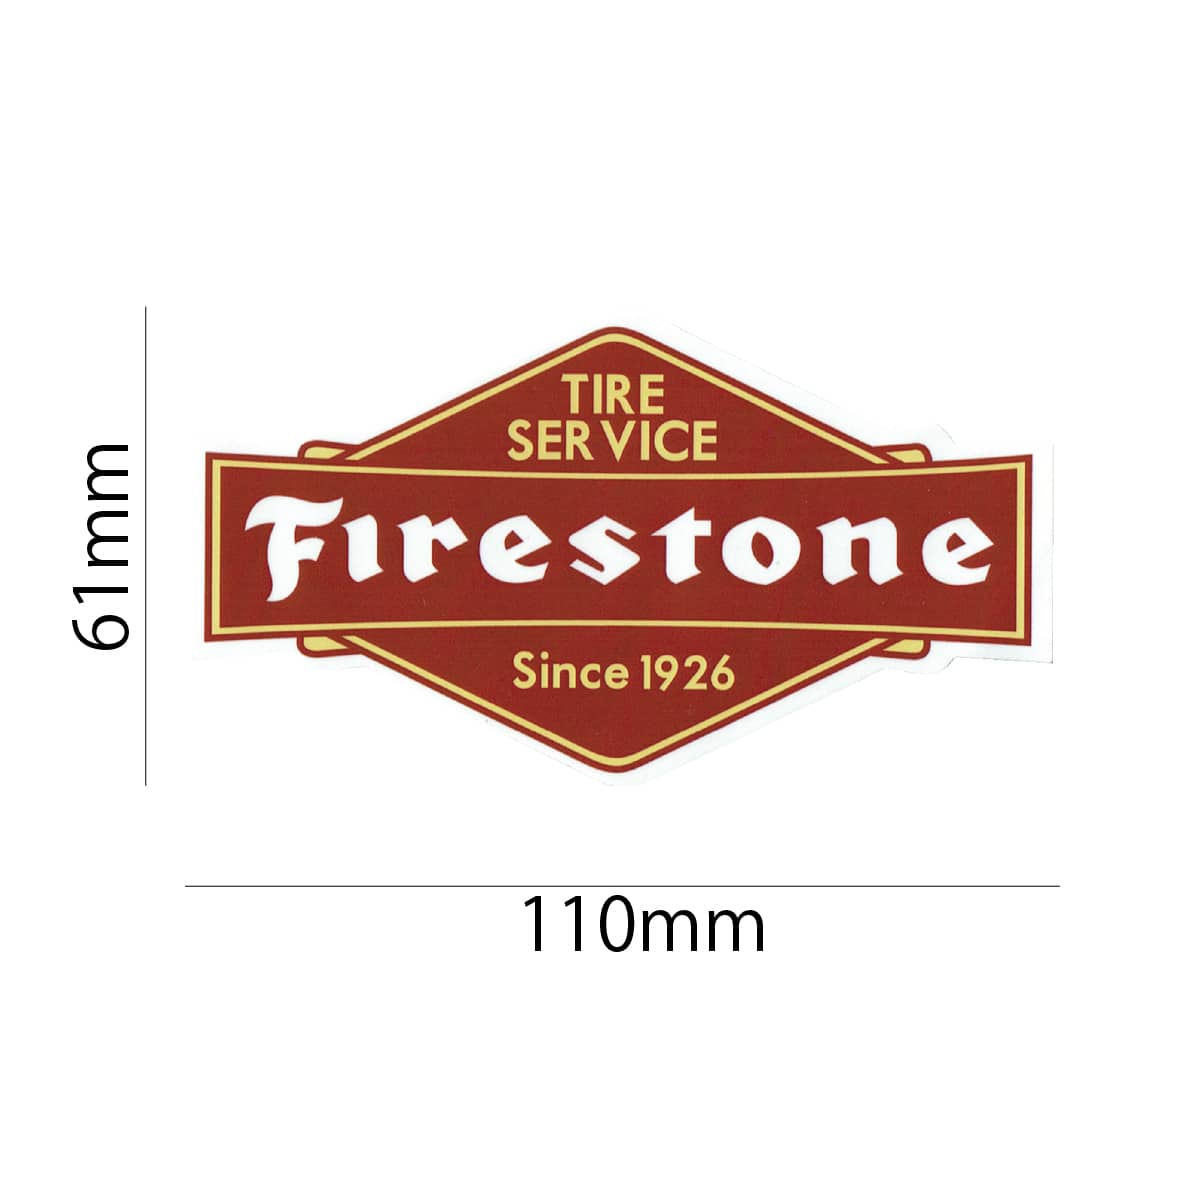 楽天市場 ステッカー シール ファイヤストーン Firestone Ms136 ステッカー シール カスタマイズ オリジナル バイク 車 ガソリン アメリカン Sss ワッペン通販 ワッペンストア